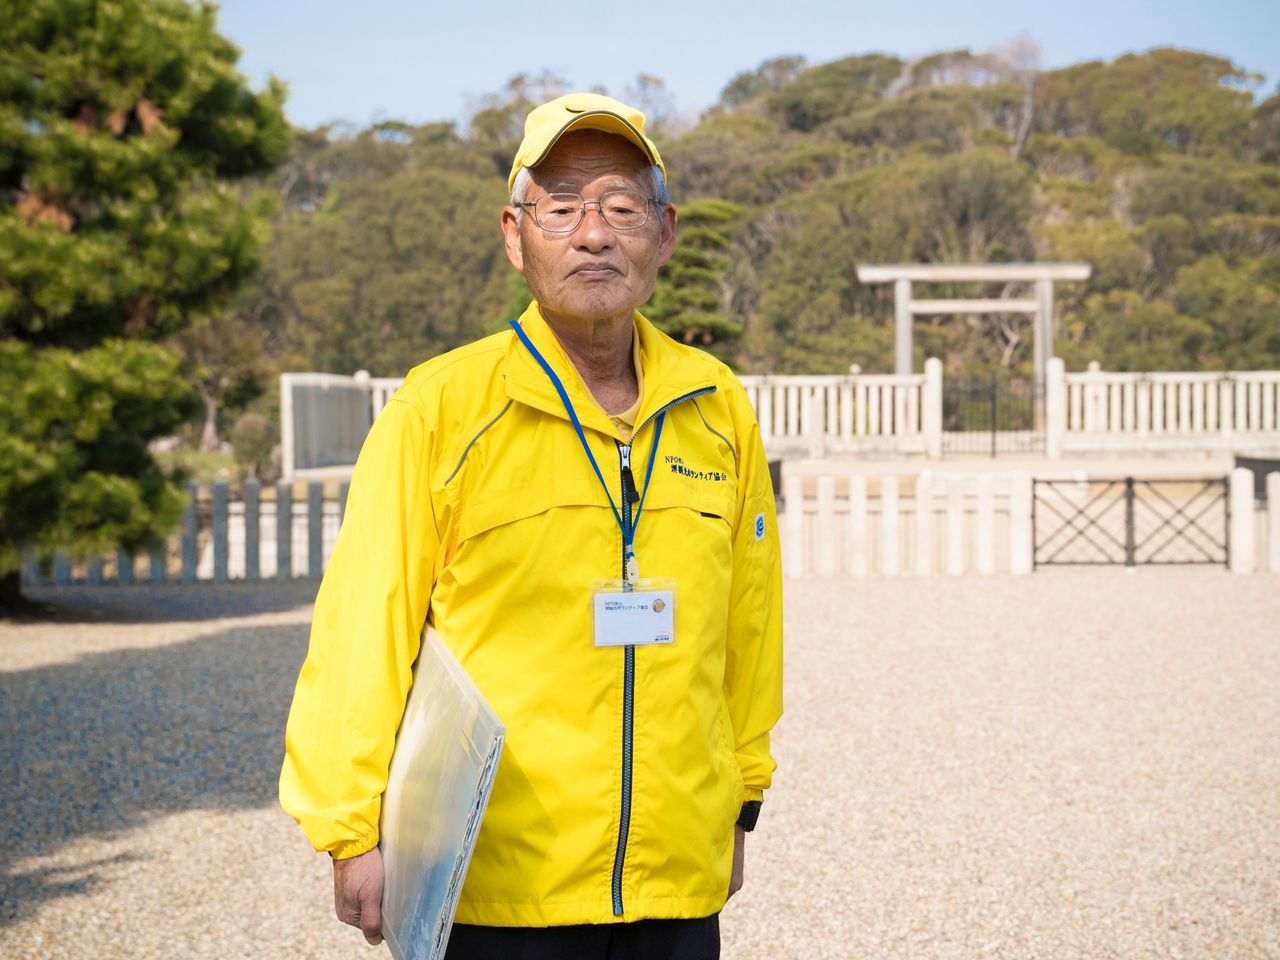 Los lugareños que se desempeñan como guías voluntarios tienen una edad media que supera los 70 años. Sus gorras y chaquetas amarillas son su particular distintivo.